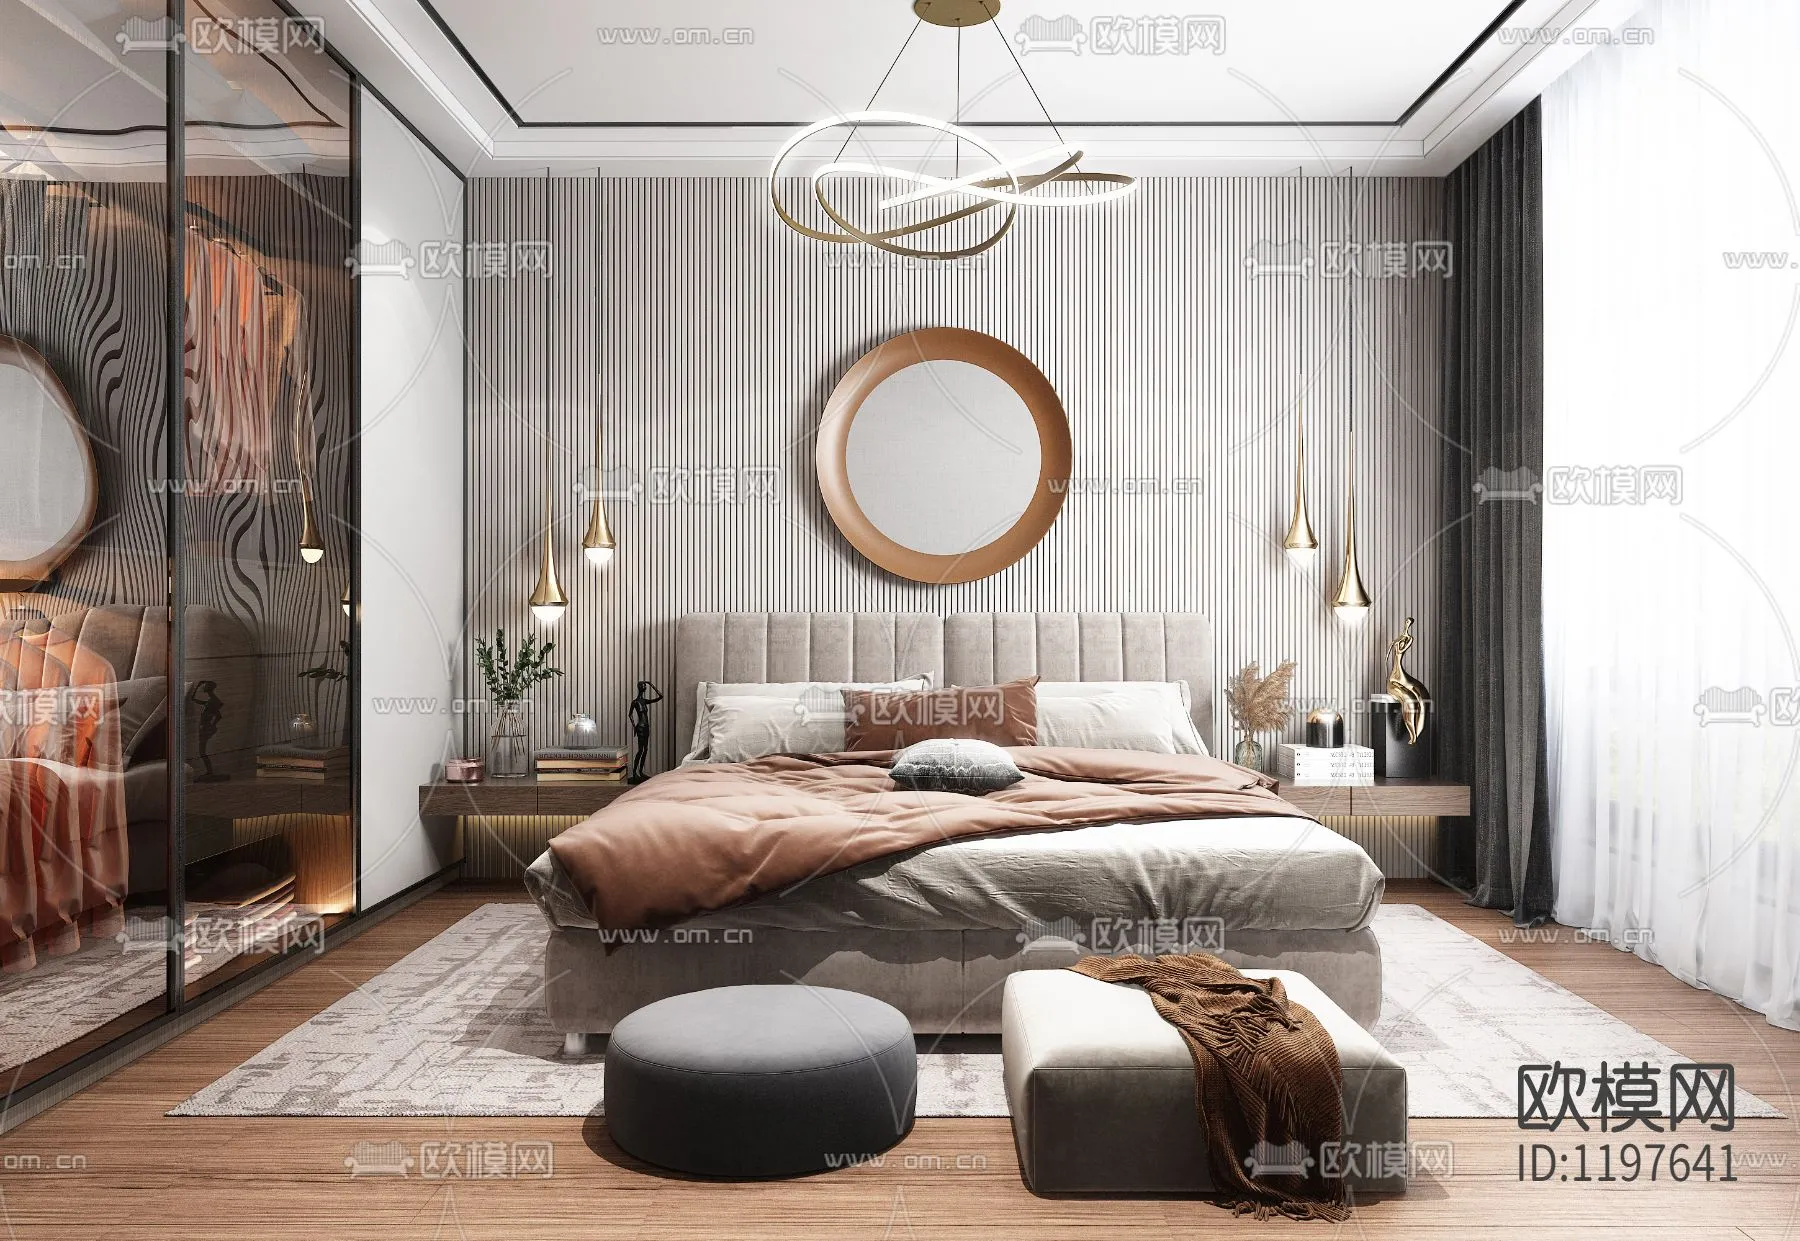 Bedroom 3D Scenes – 0198